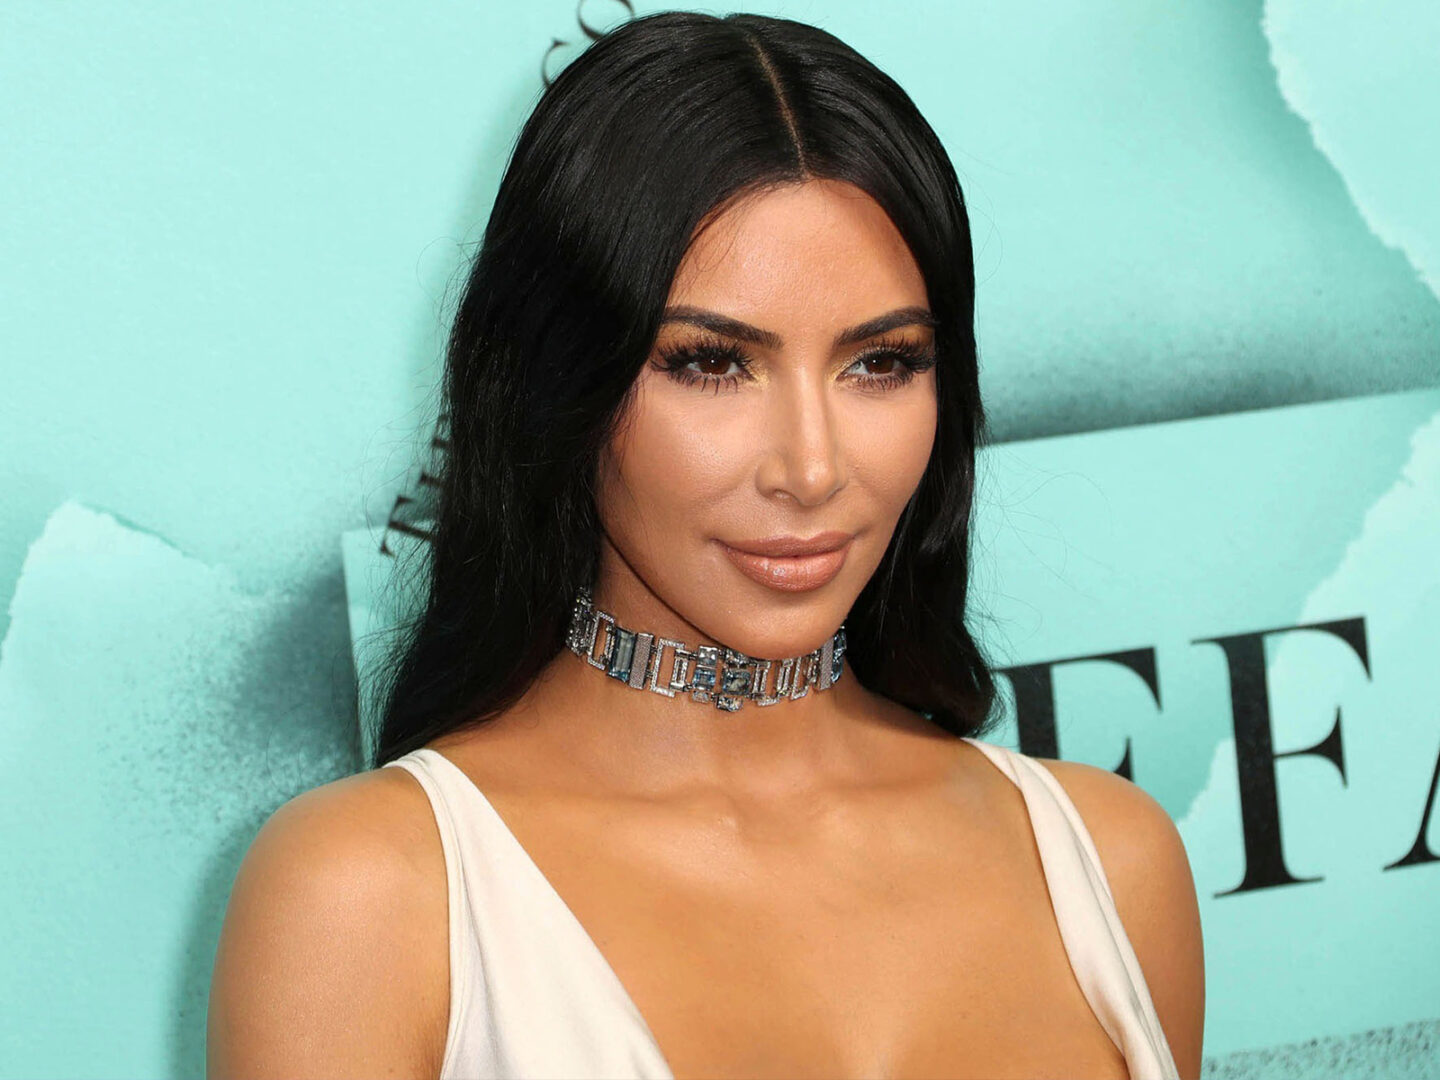 The Kim Kardashian phenomenon: from reality star to billionaire